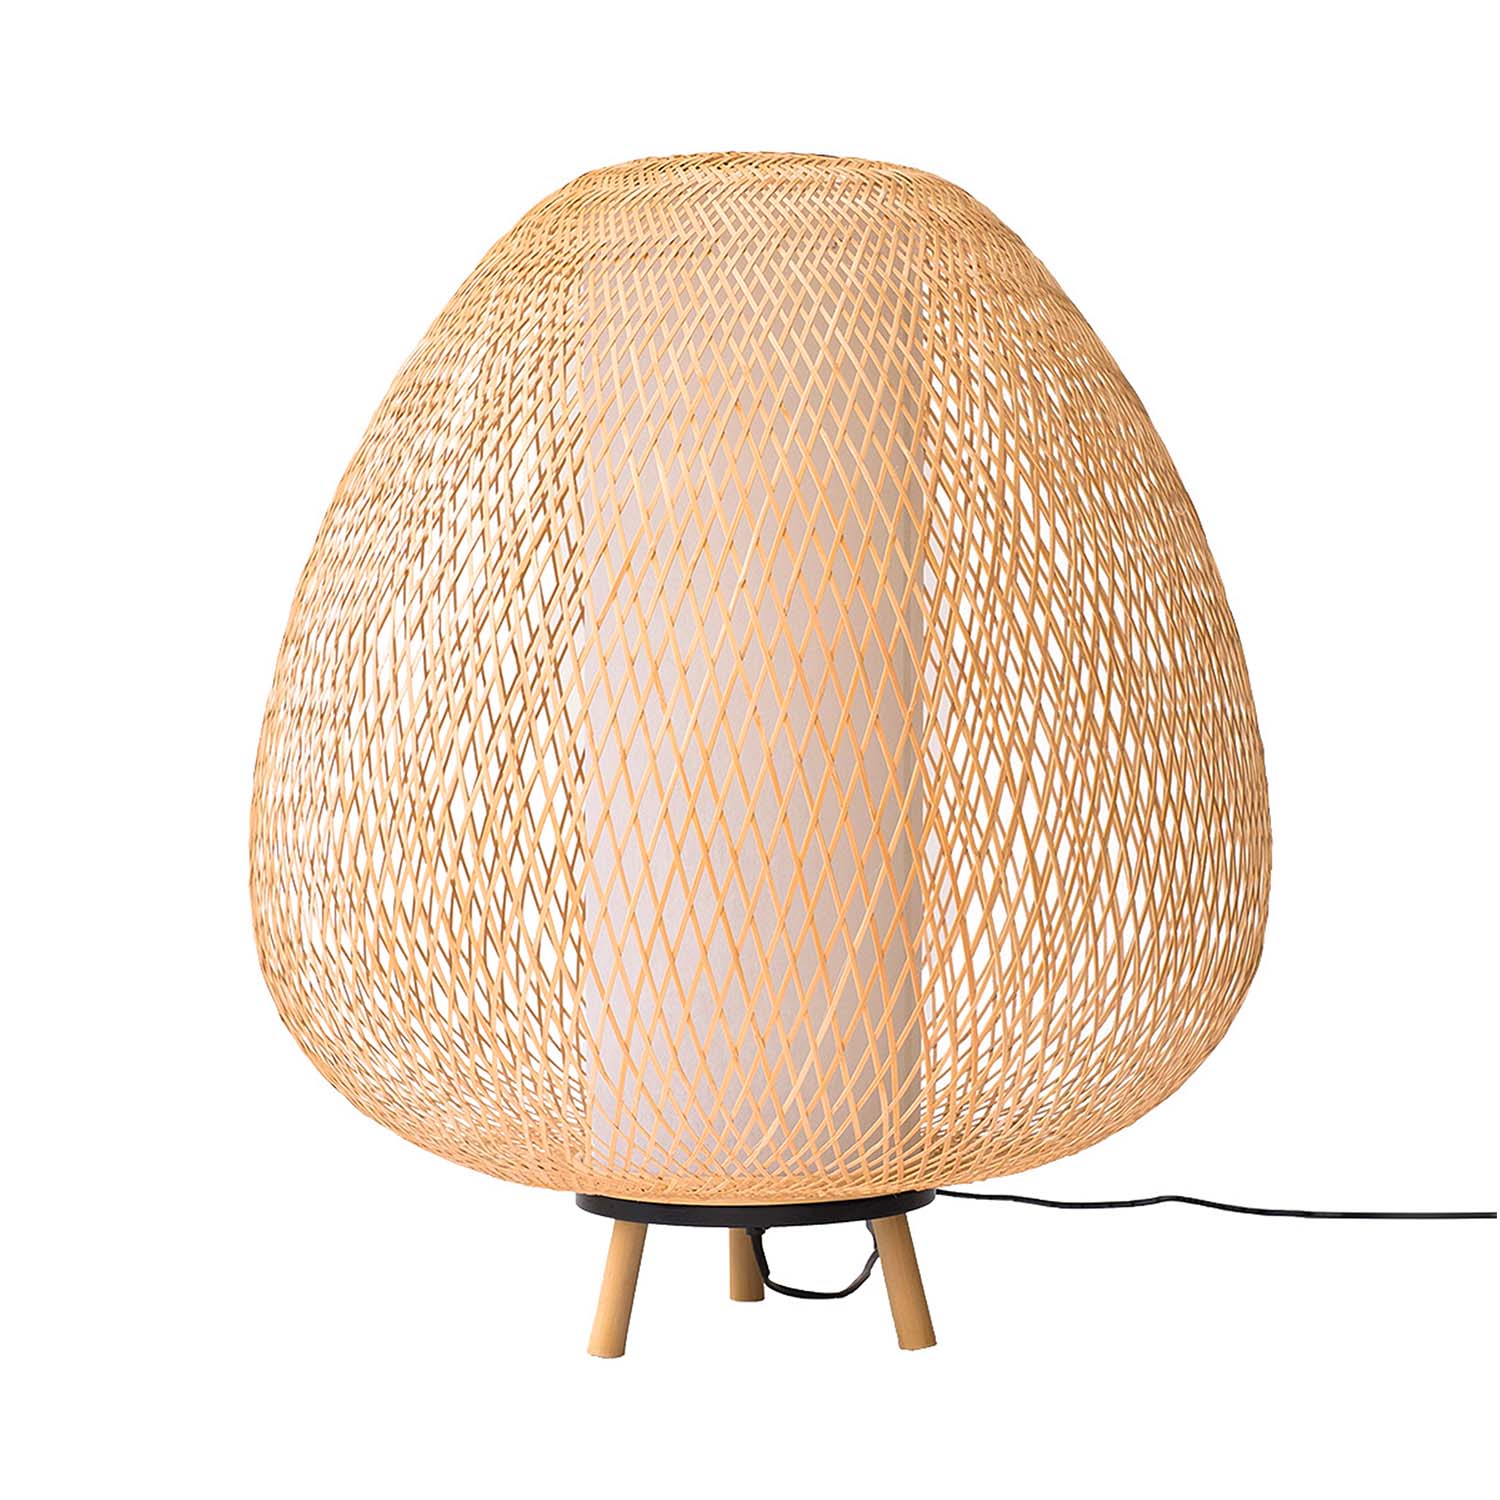 TWIGGY EGG – Eiförmige Stehlampe aus geflochtenem Bambus